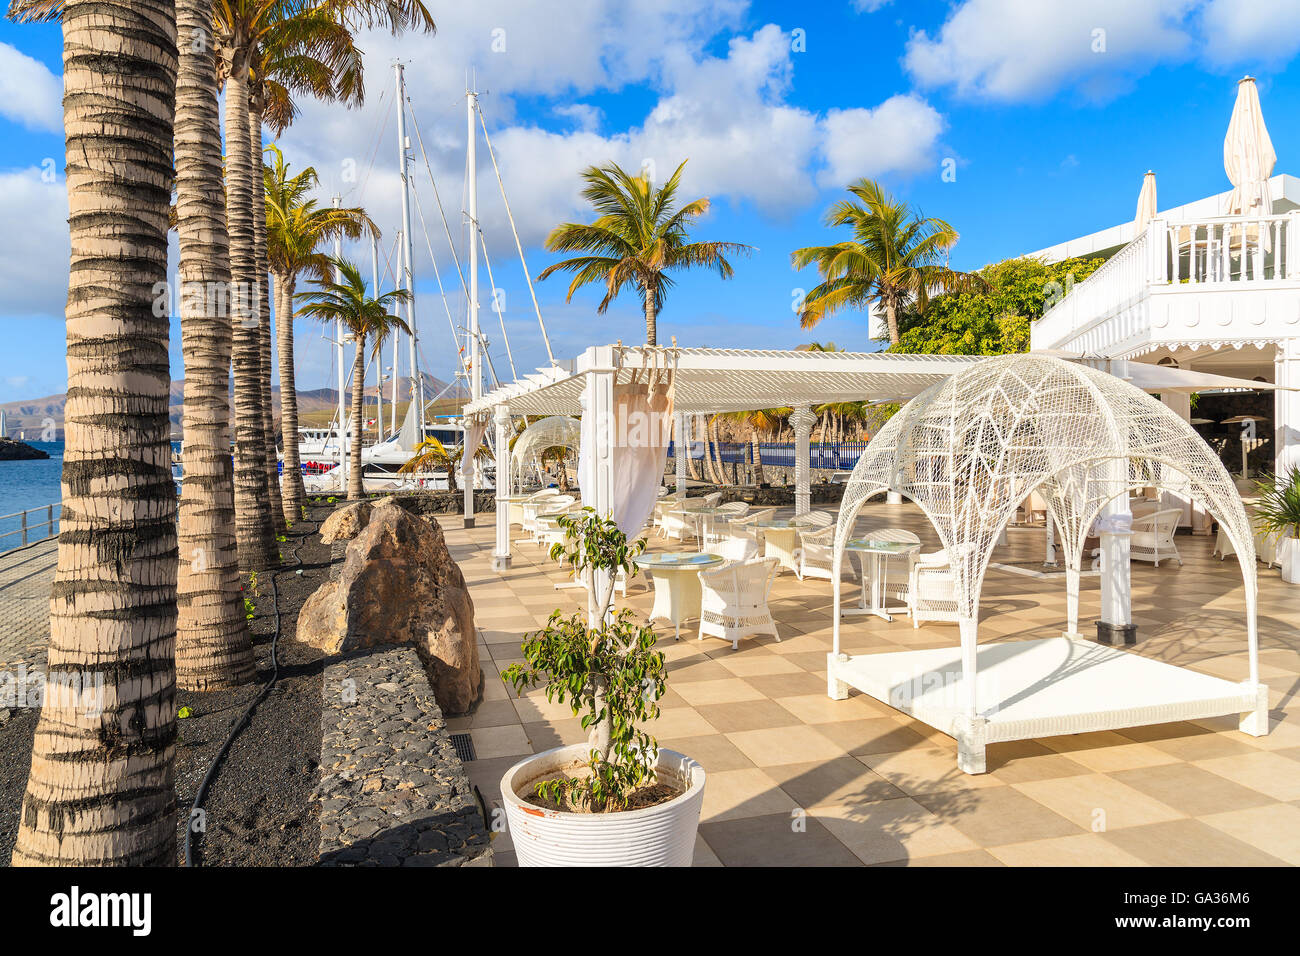 PUERTO CALERO MARINA, Lanzarote - Jan 17, 2015: lussuoso ristorante terrazza in Puerto Calero marina costruito in stile caraibico. Le isole Canarie sono meta di vacanze tutto l'anno. Foto Stock